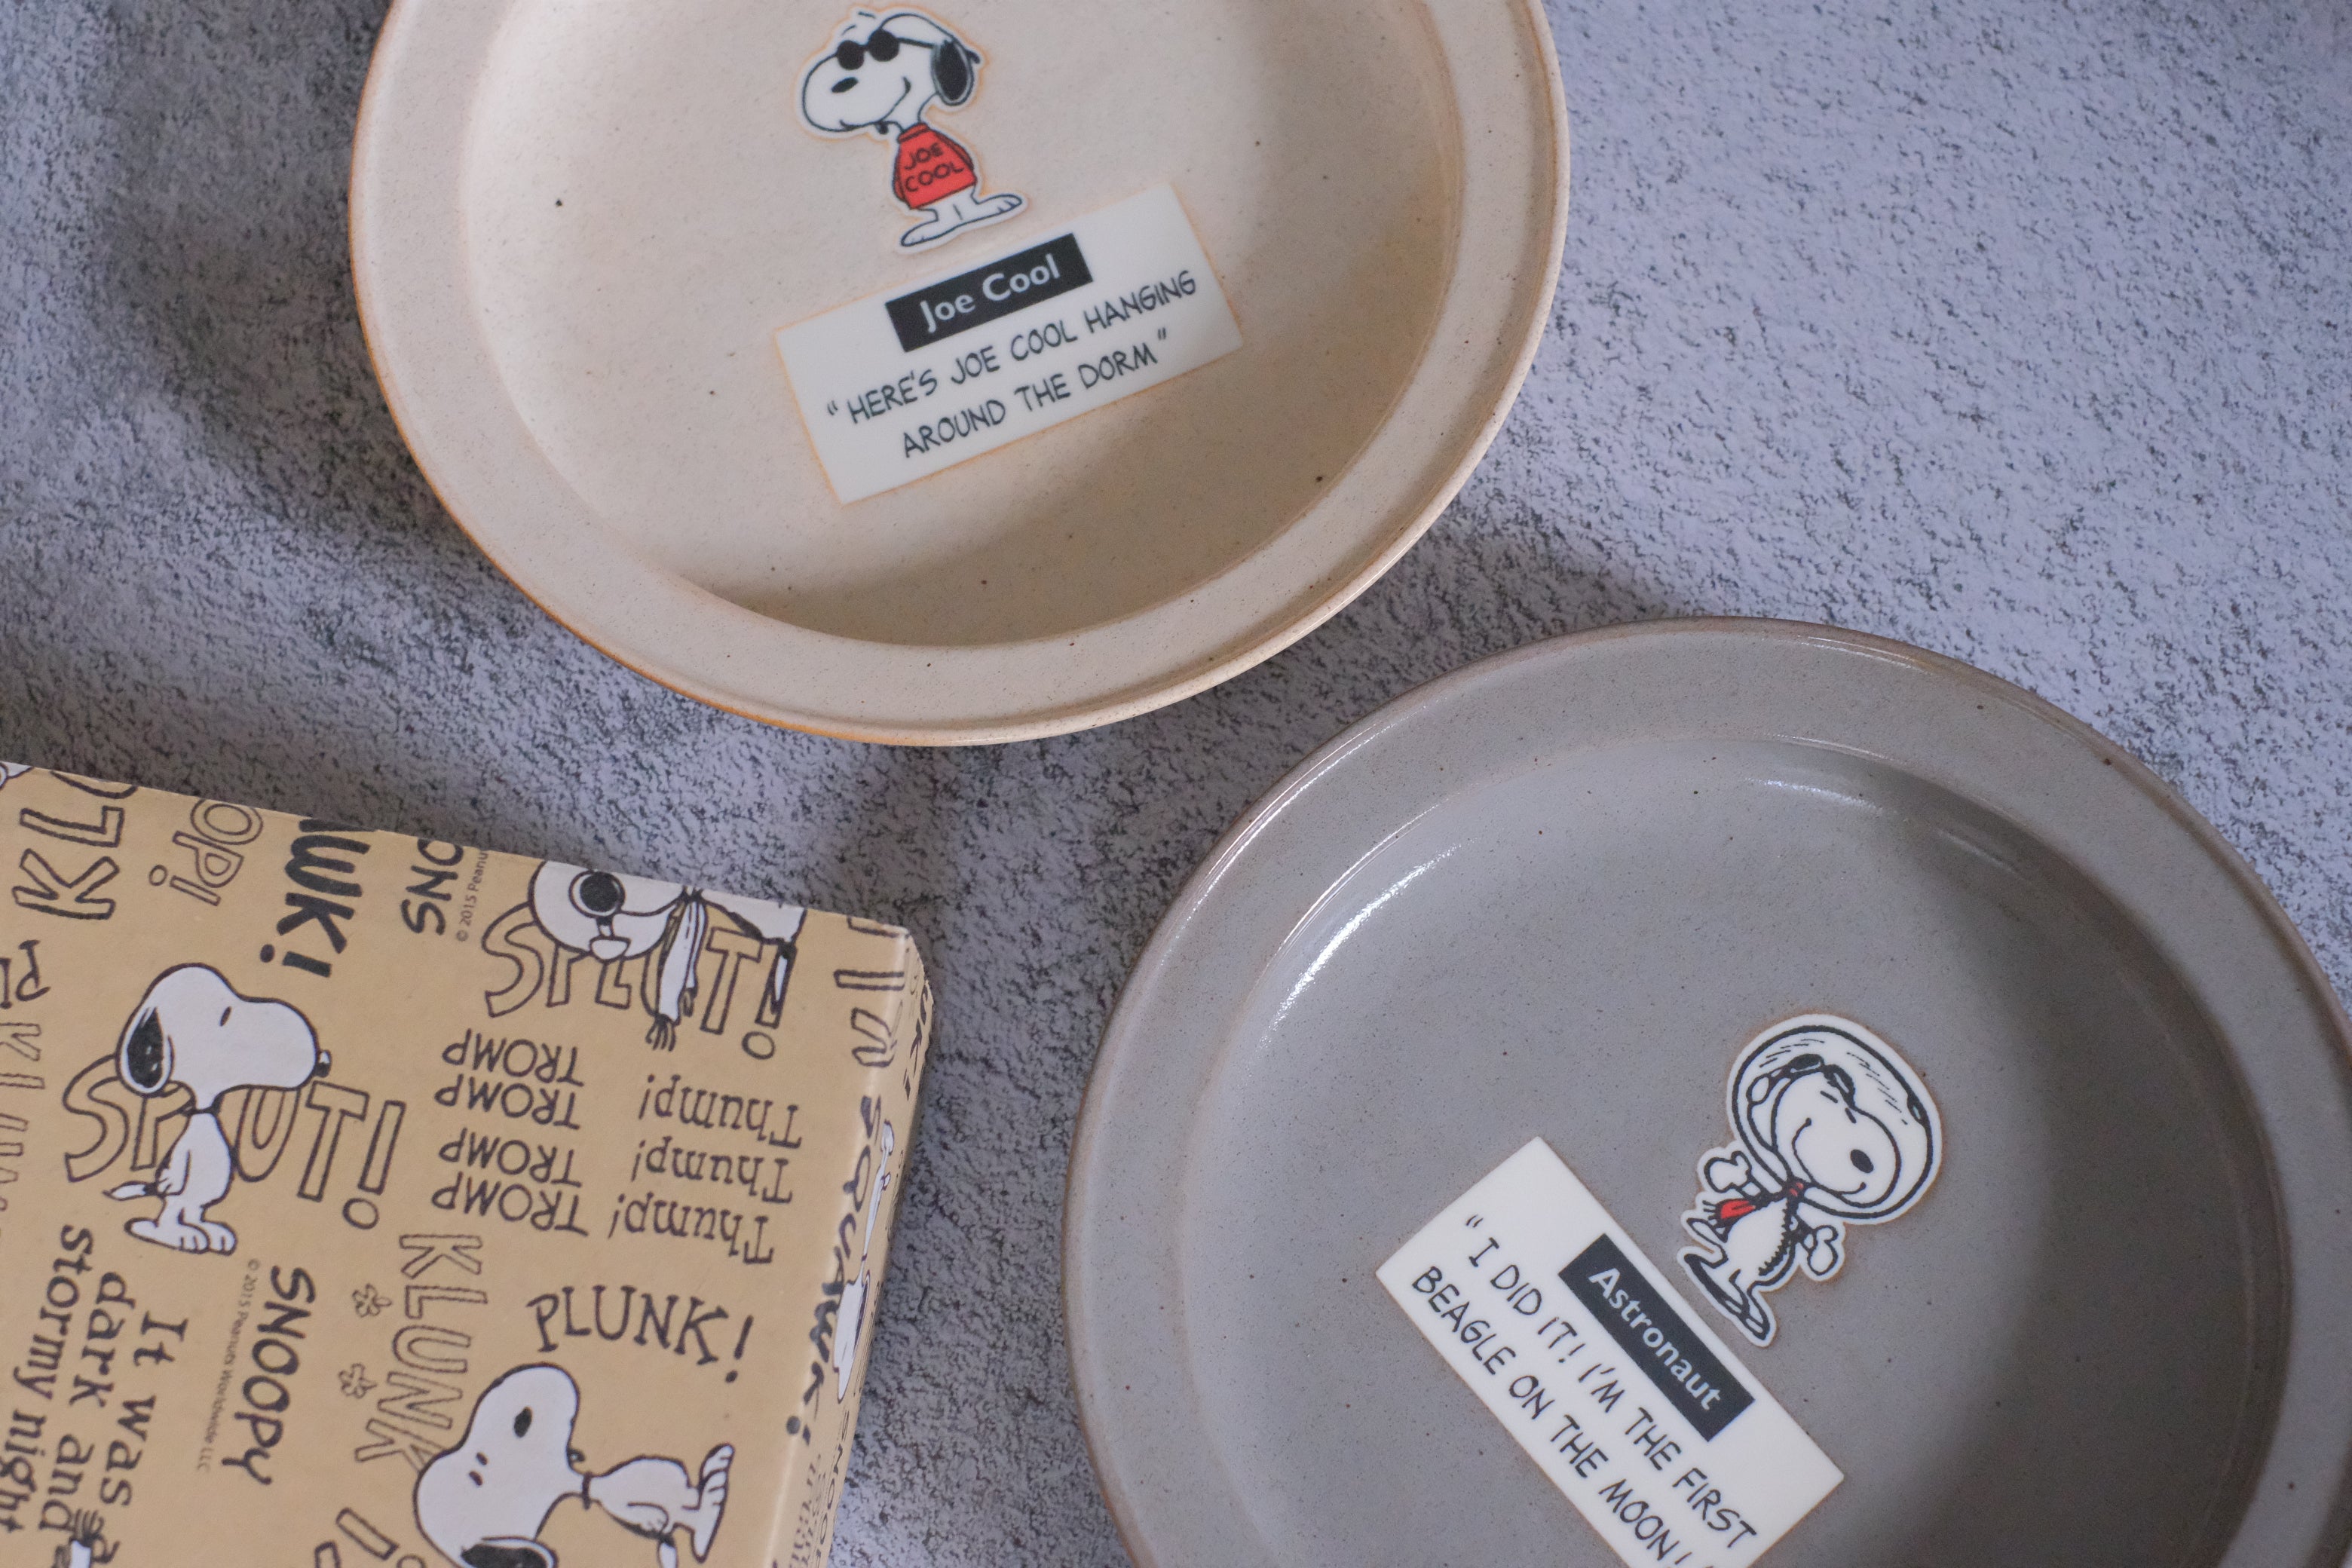 Vintage Peanuts Snoopy Joe Cool Deep Dish/ Pasta Plate Pair